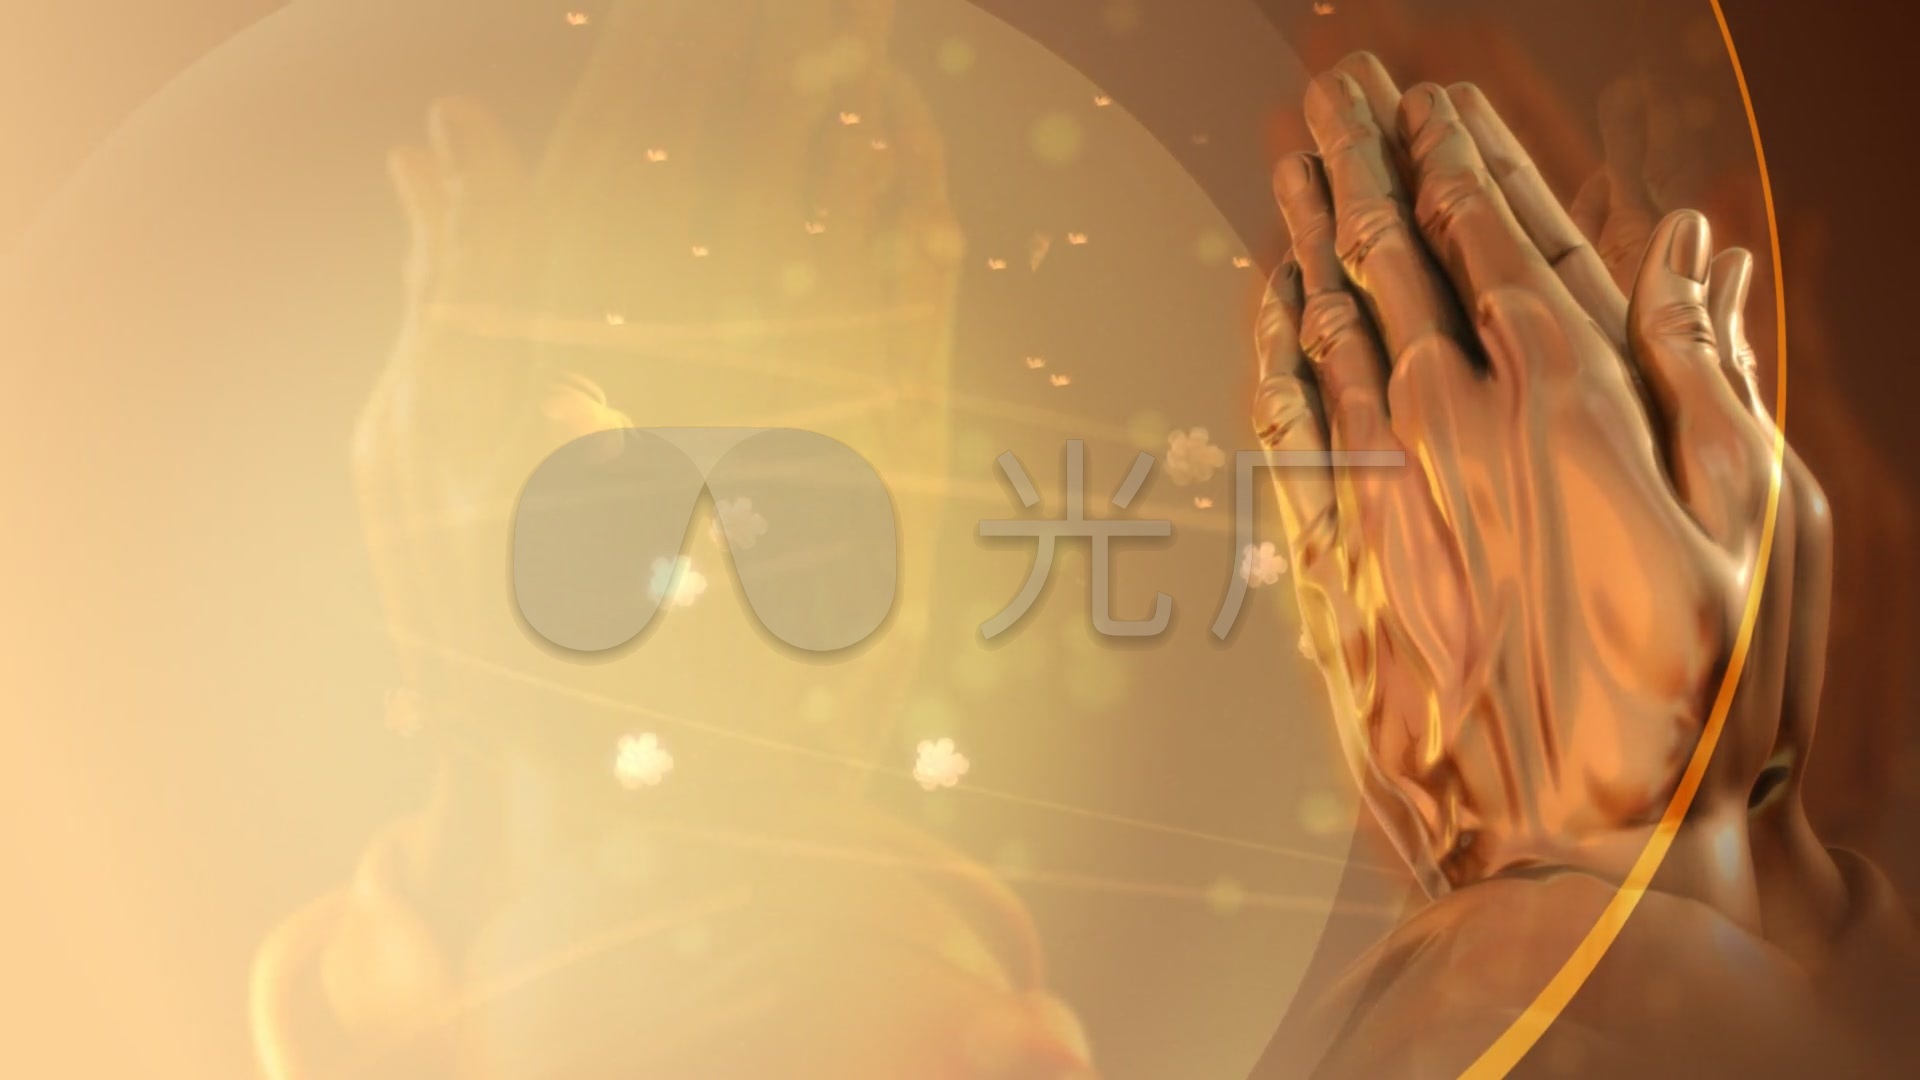 祈福的双手 - 合成背景视频素材 - www.vjshi.com_vj